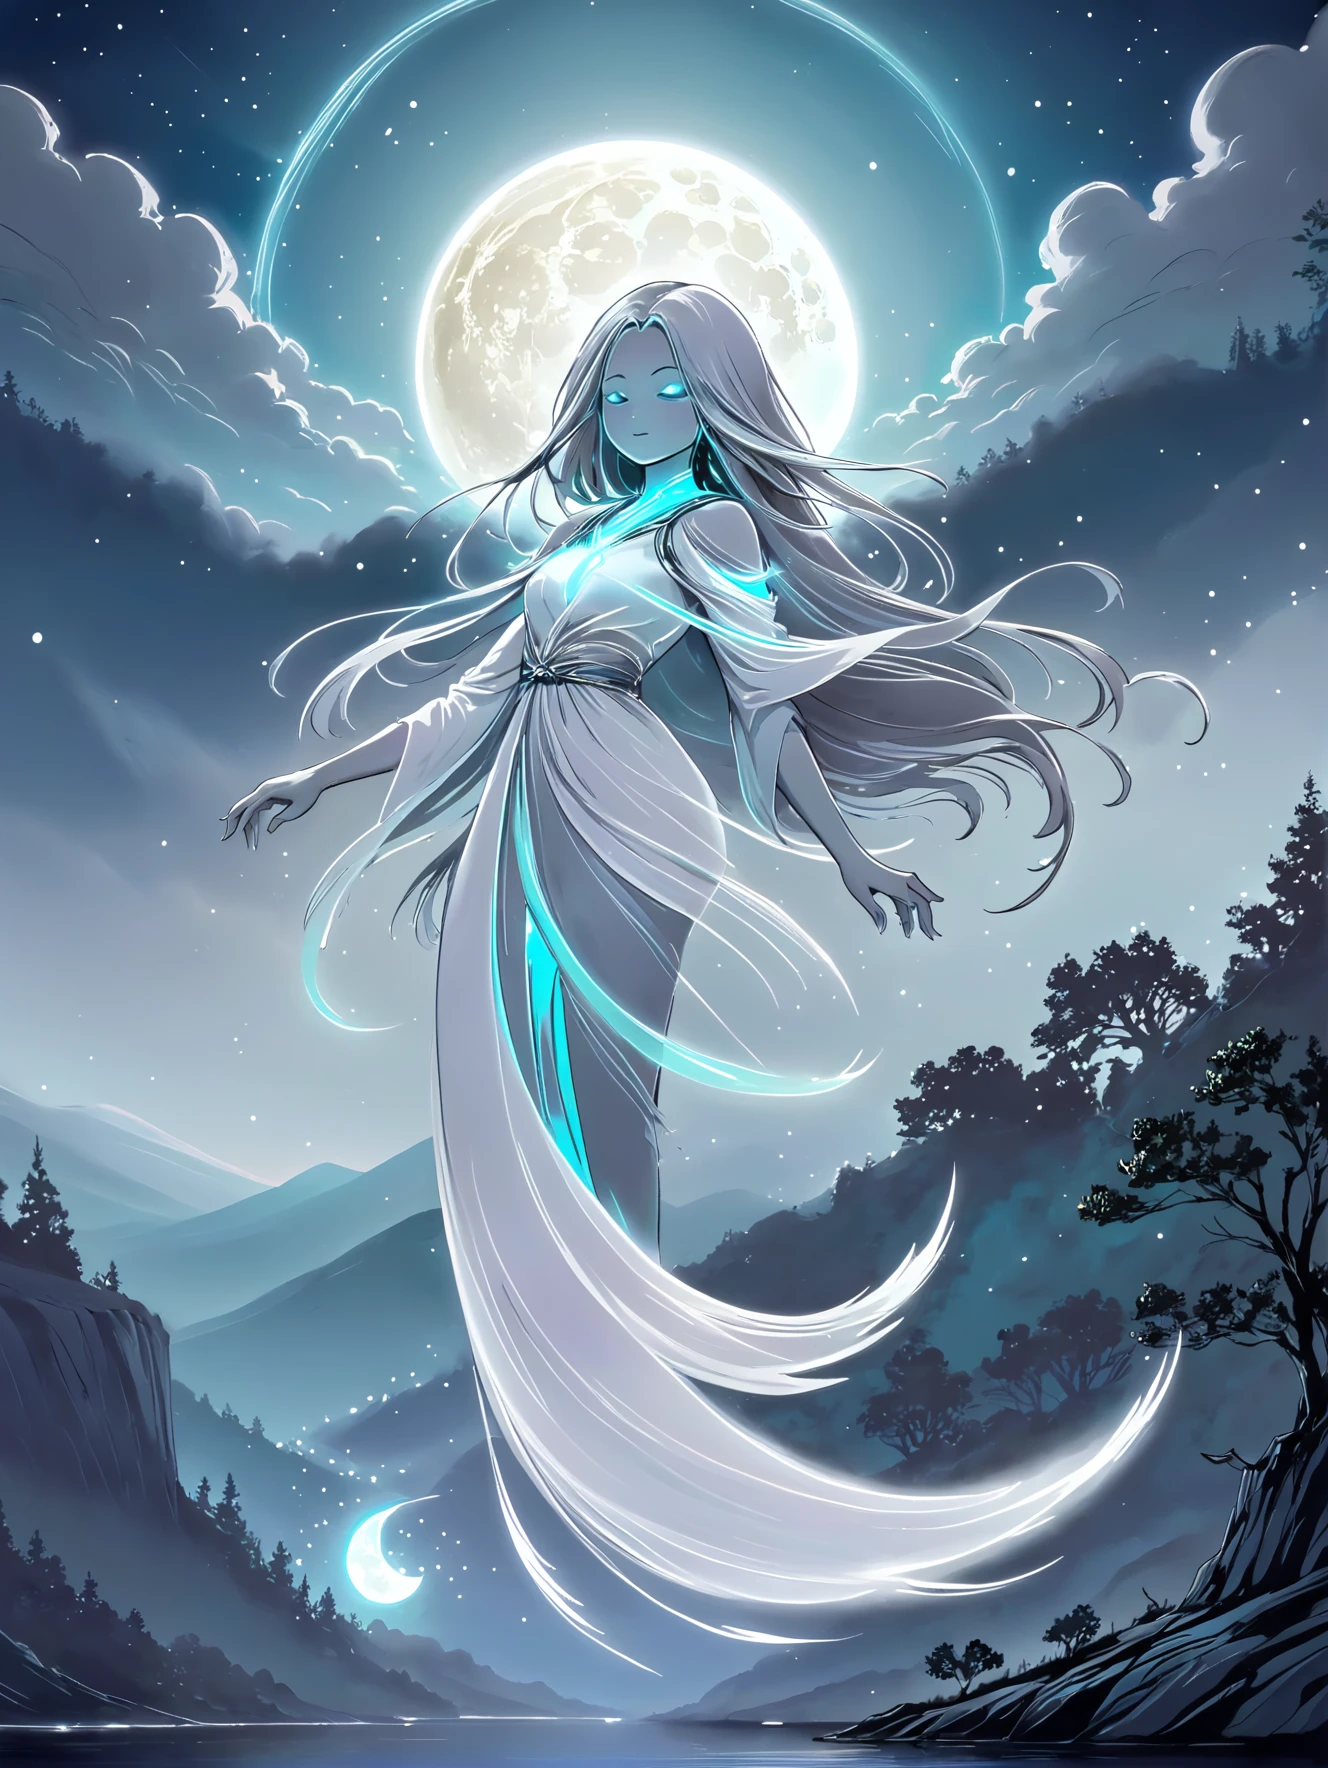 Un espíritu de luna luminosa, con estelas plateadas, flotando sobre un tranquilo paisaje nocturno.